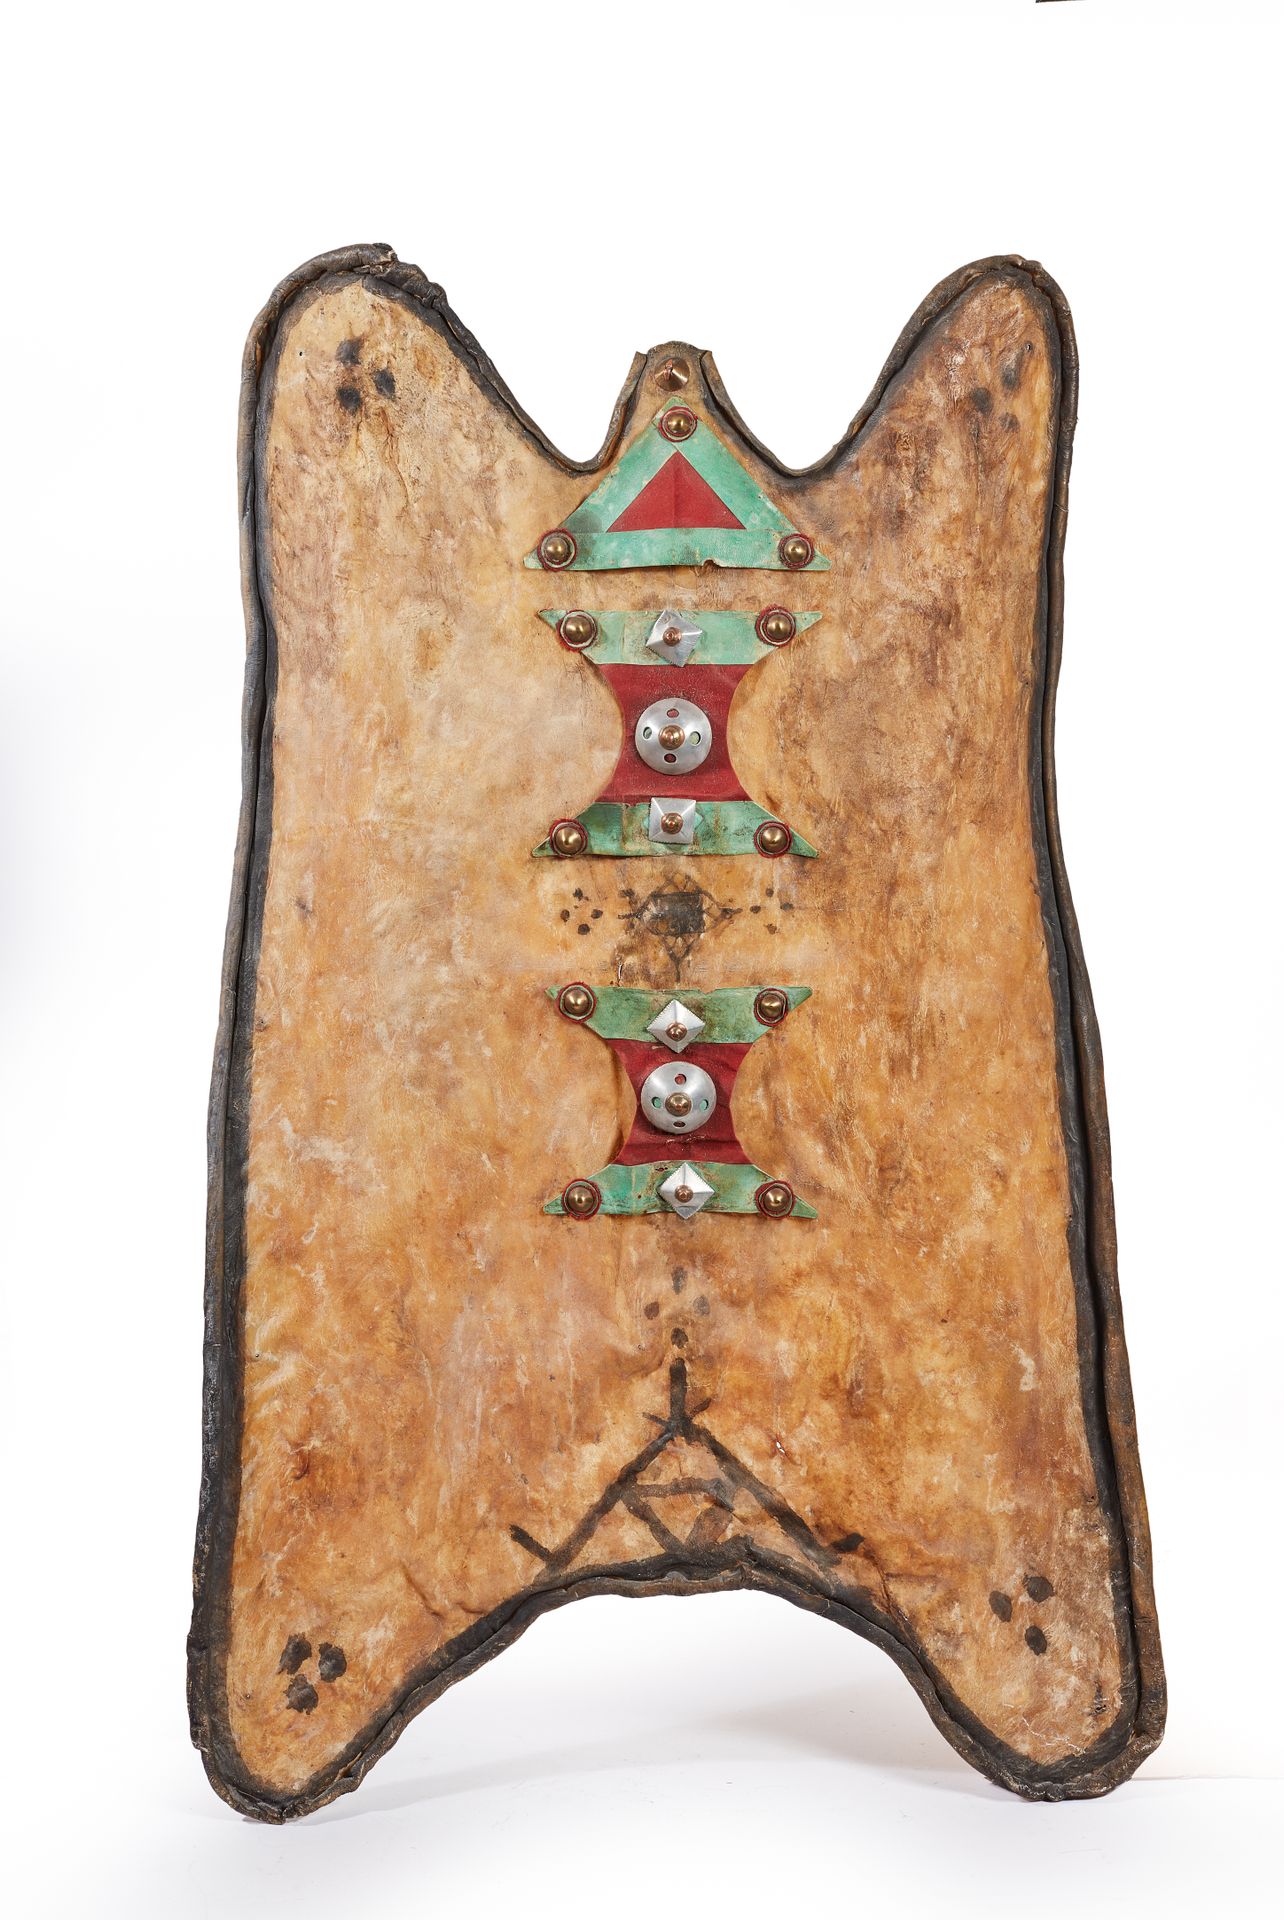 Null 盾牌或阿拉尔由大羚羊皮制成，边缘经过轧制和熏黑，有三个由红色织物和卡诺皮革制成的装饰，由黄铜、铜和铝铆钉固定在一起。

阿尔及利亚南部的霍加尔--20&hellip;